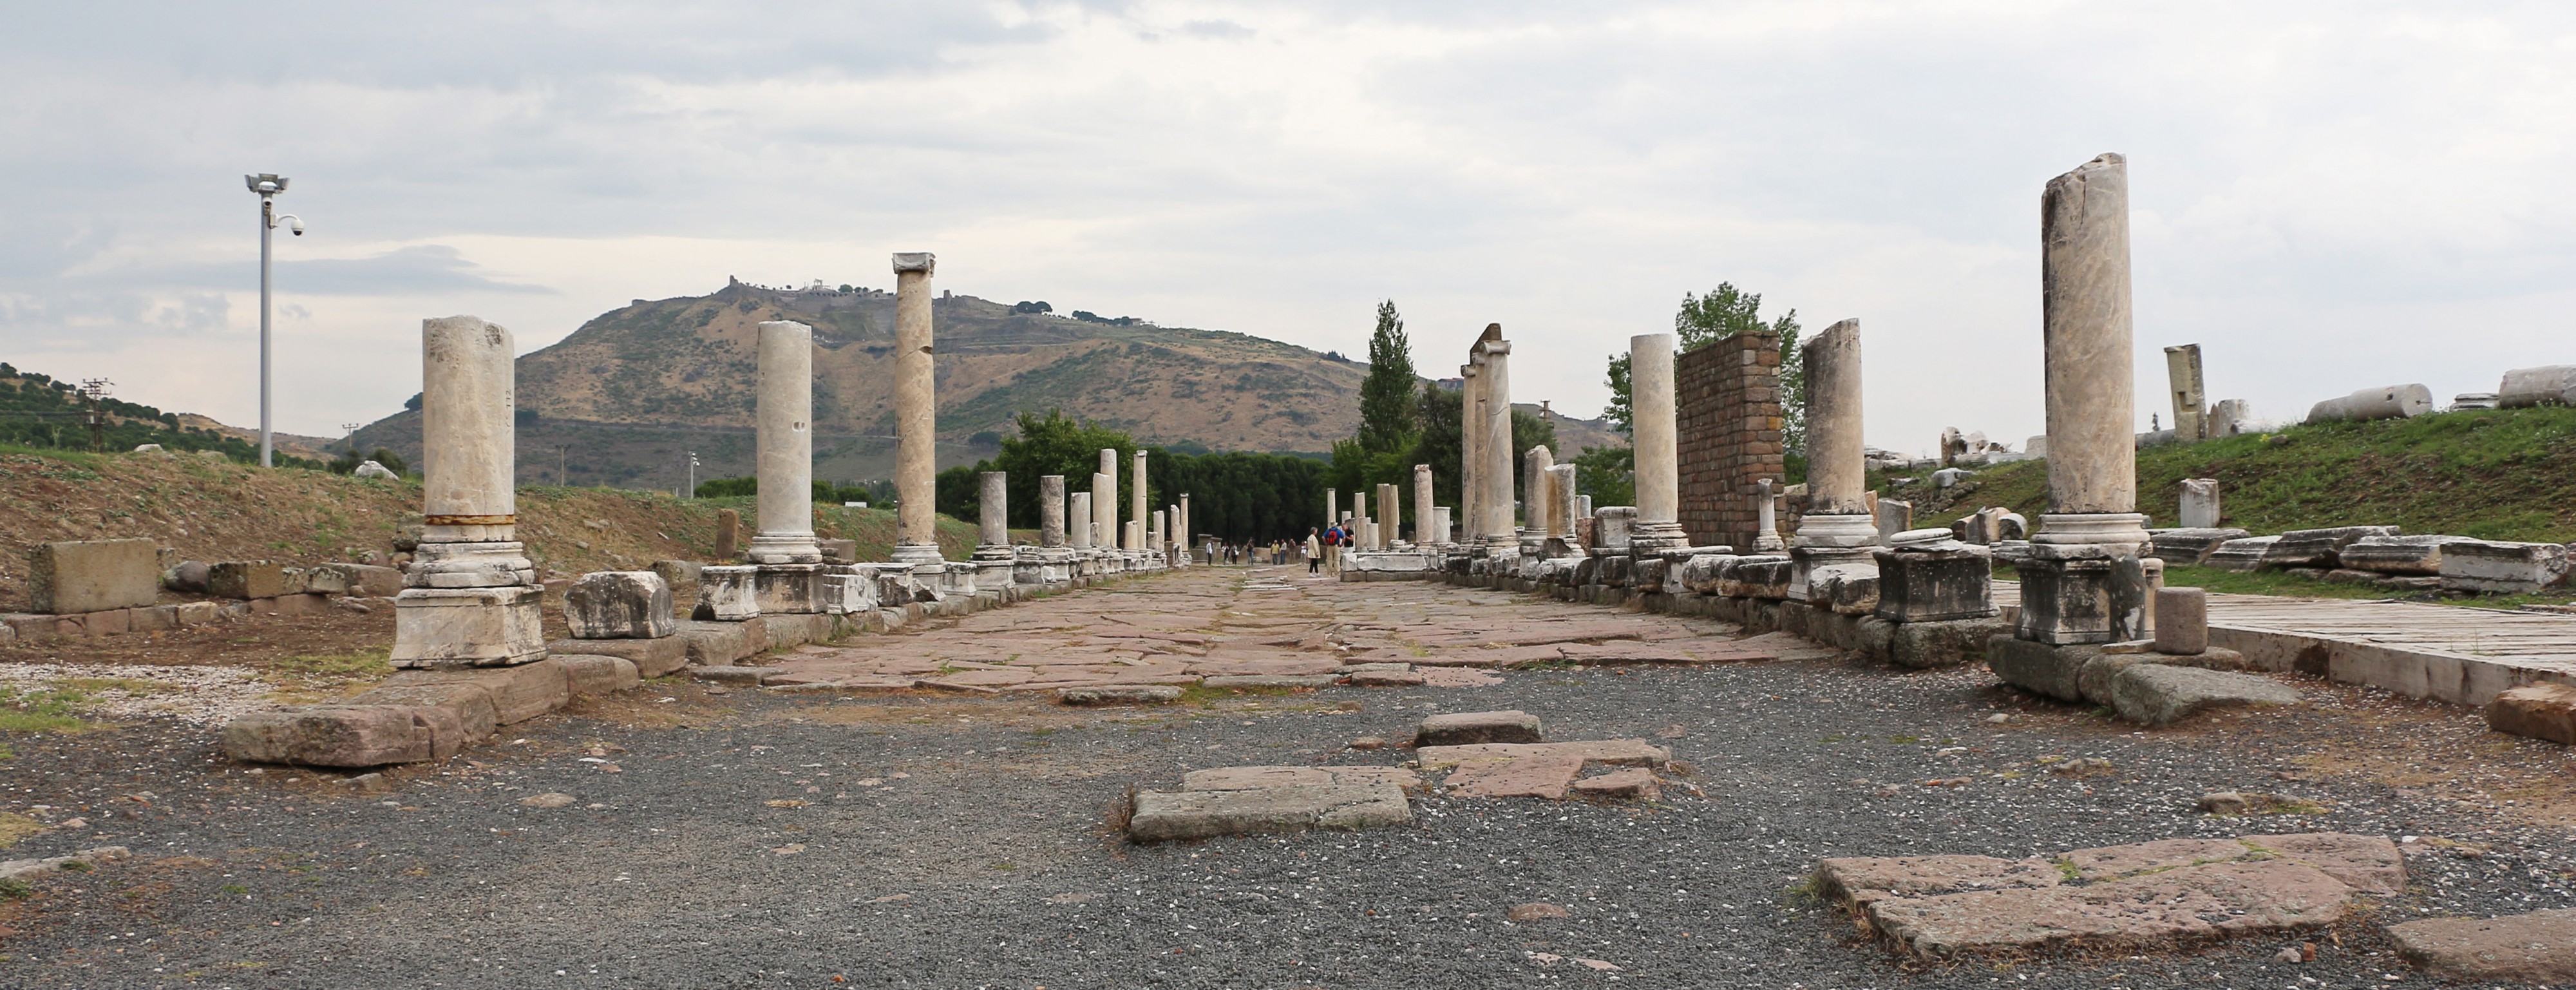 Via Tecta in Pergamon Asclepium